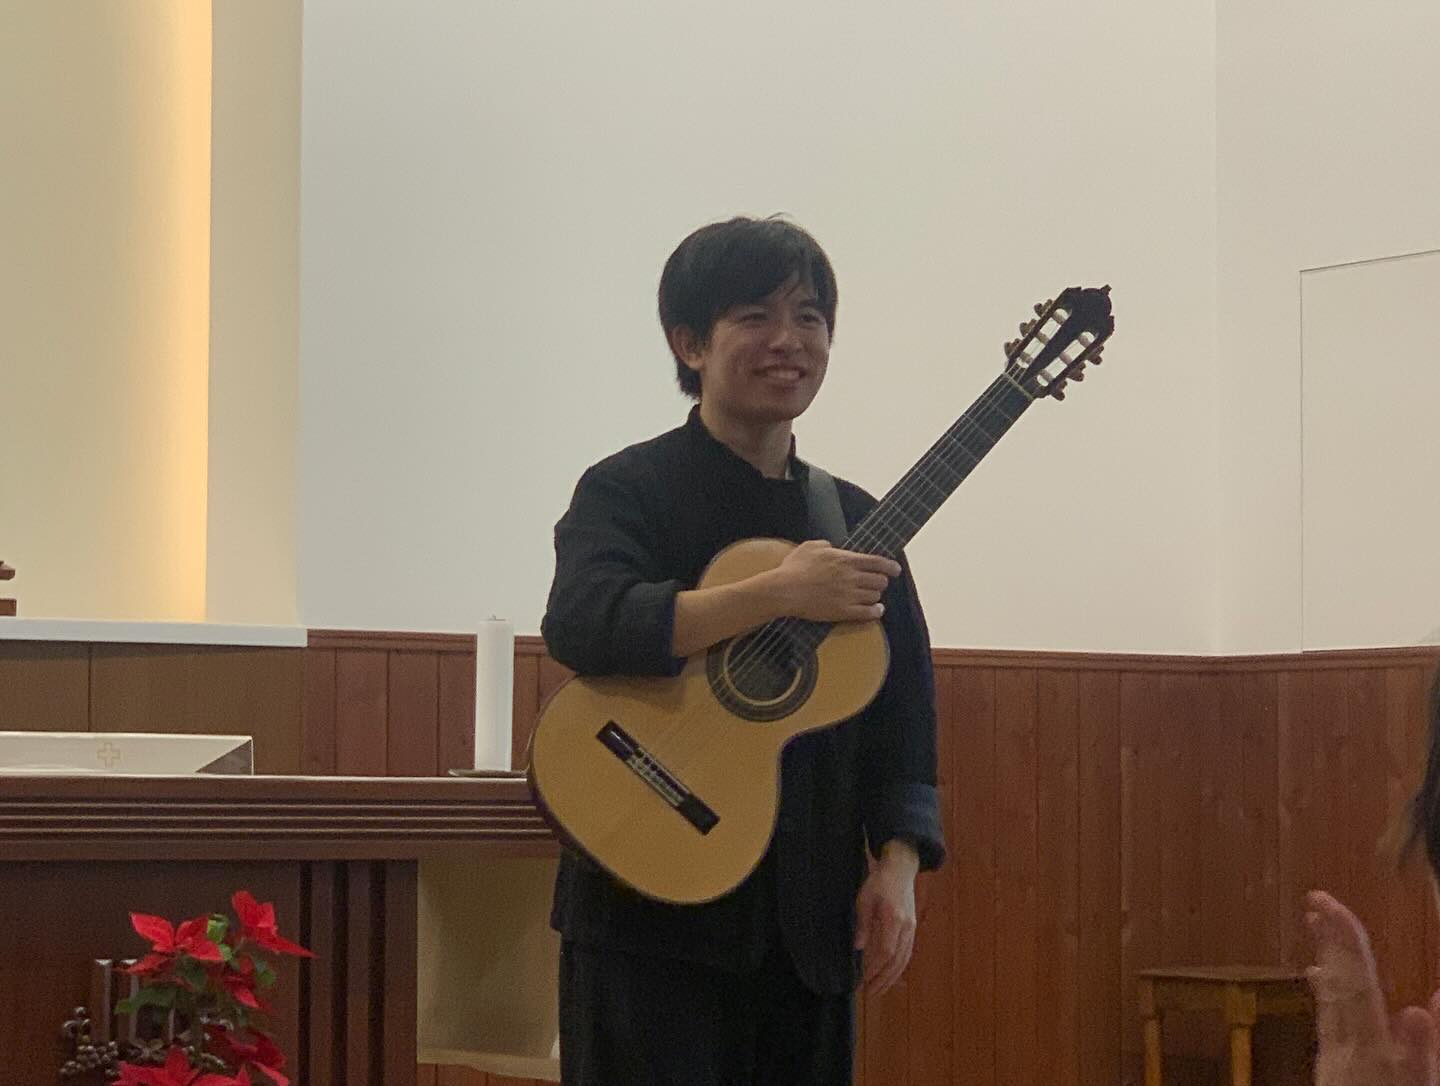 「ギターと静寂」五十嵐紅さんのコンサートへ。教会で、静かな時間、楽しみました。最近、クラシックギターにハマってます。癒しを求めてるようですアンコールは撮影OKでした。#五十嵐紅